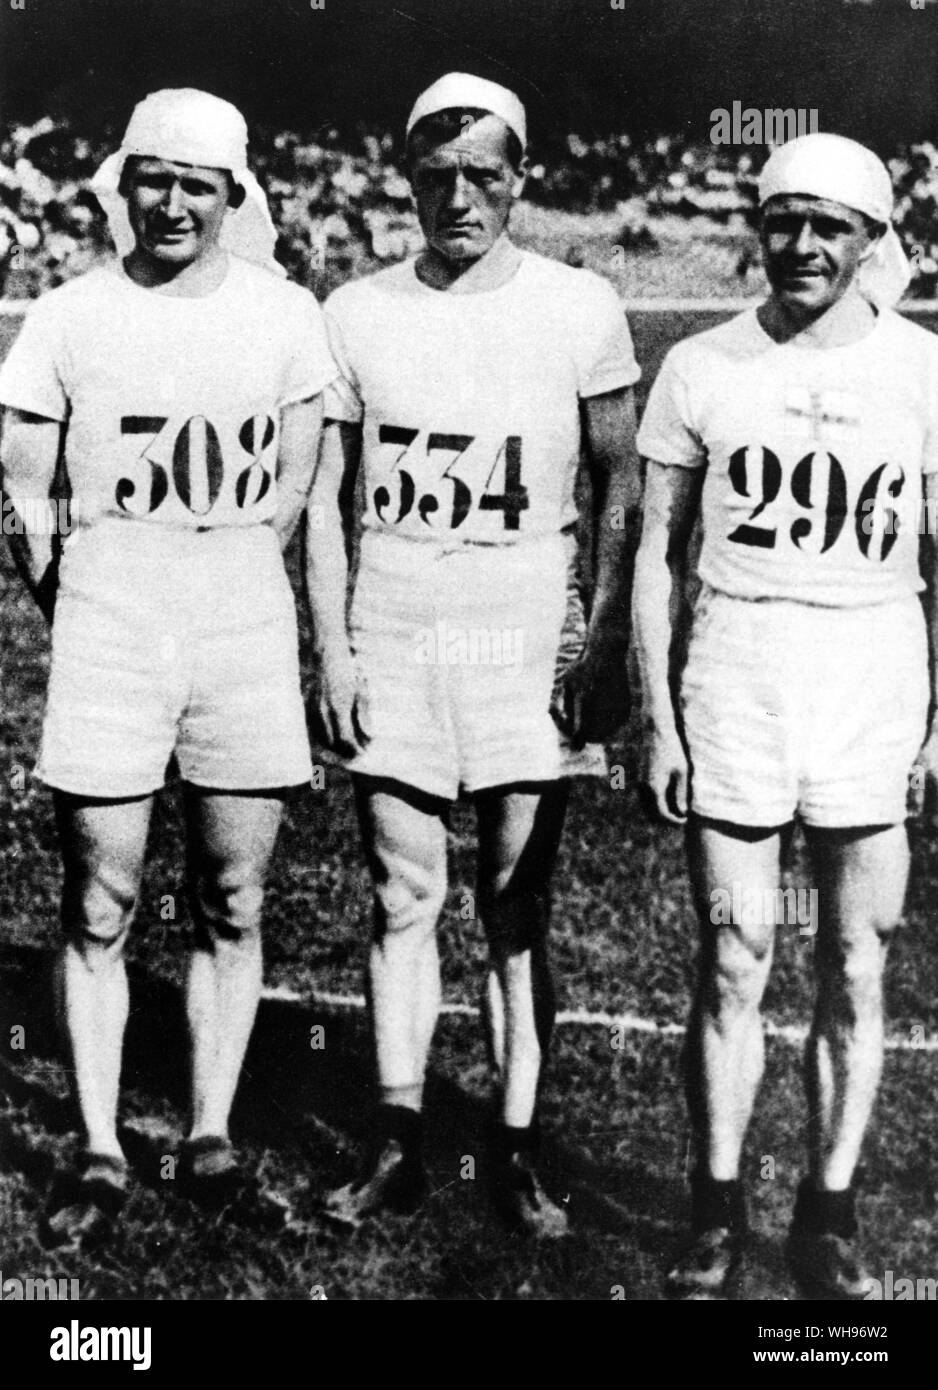 Frankreich, Paris Olympics, 1924: Finnlands marathon Team. Hannes Kolehmainen, Albin Stenroos (Gewinner) und Lauri Halonen. Stockfoto